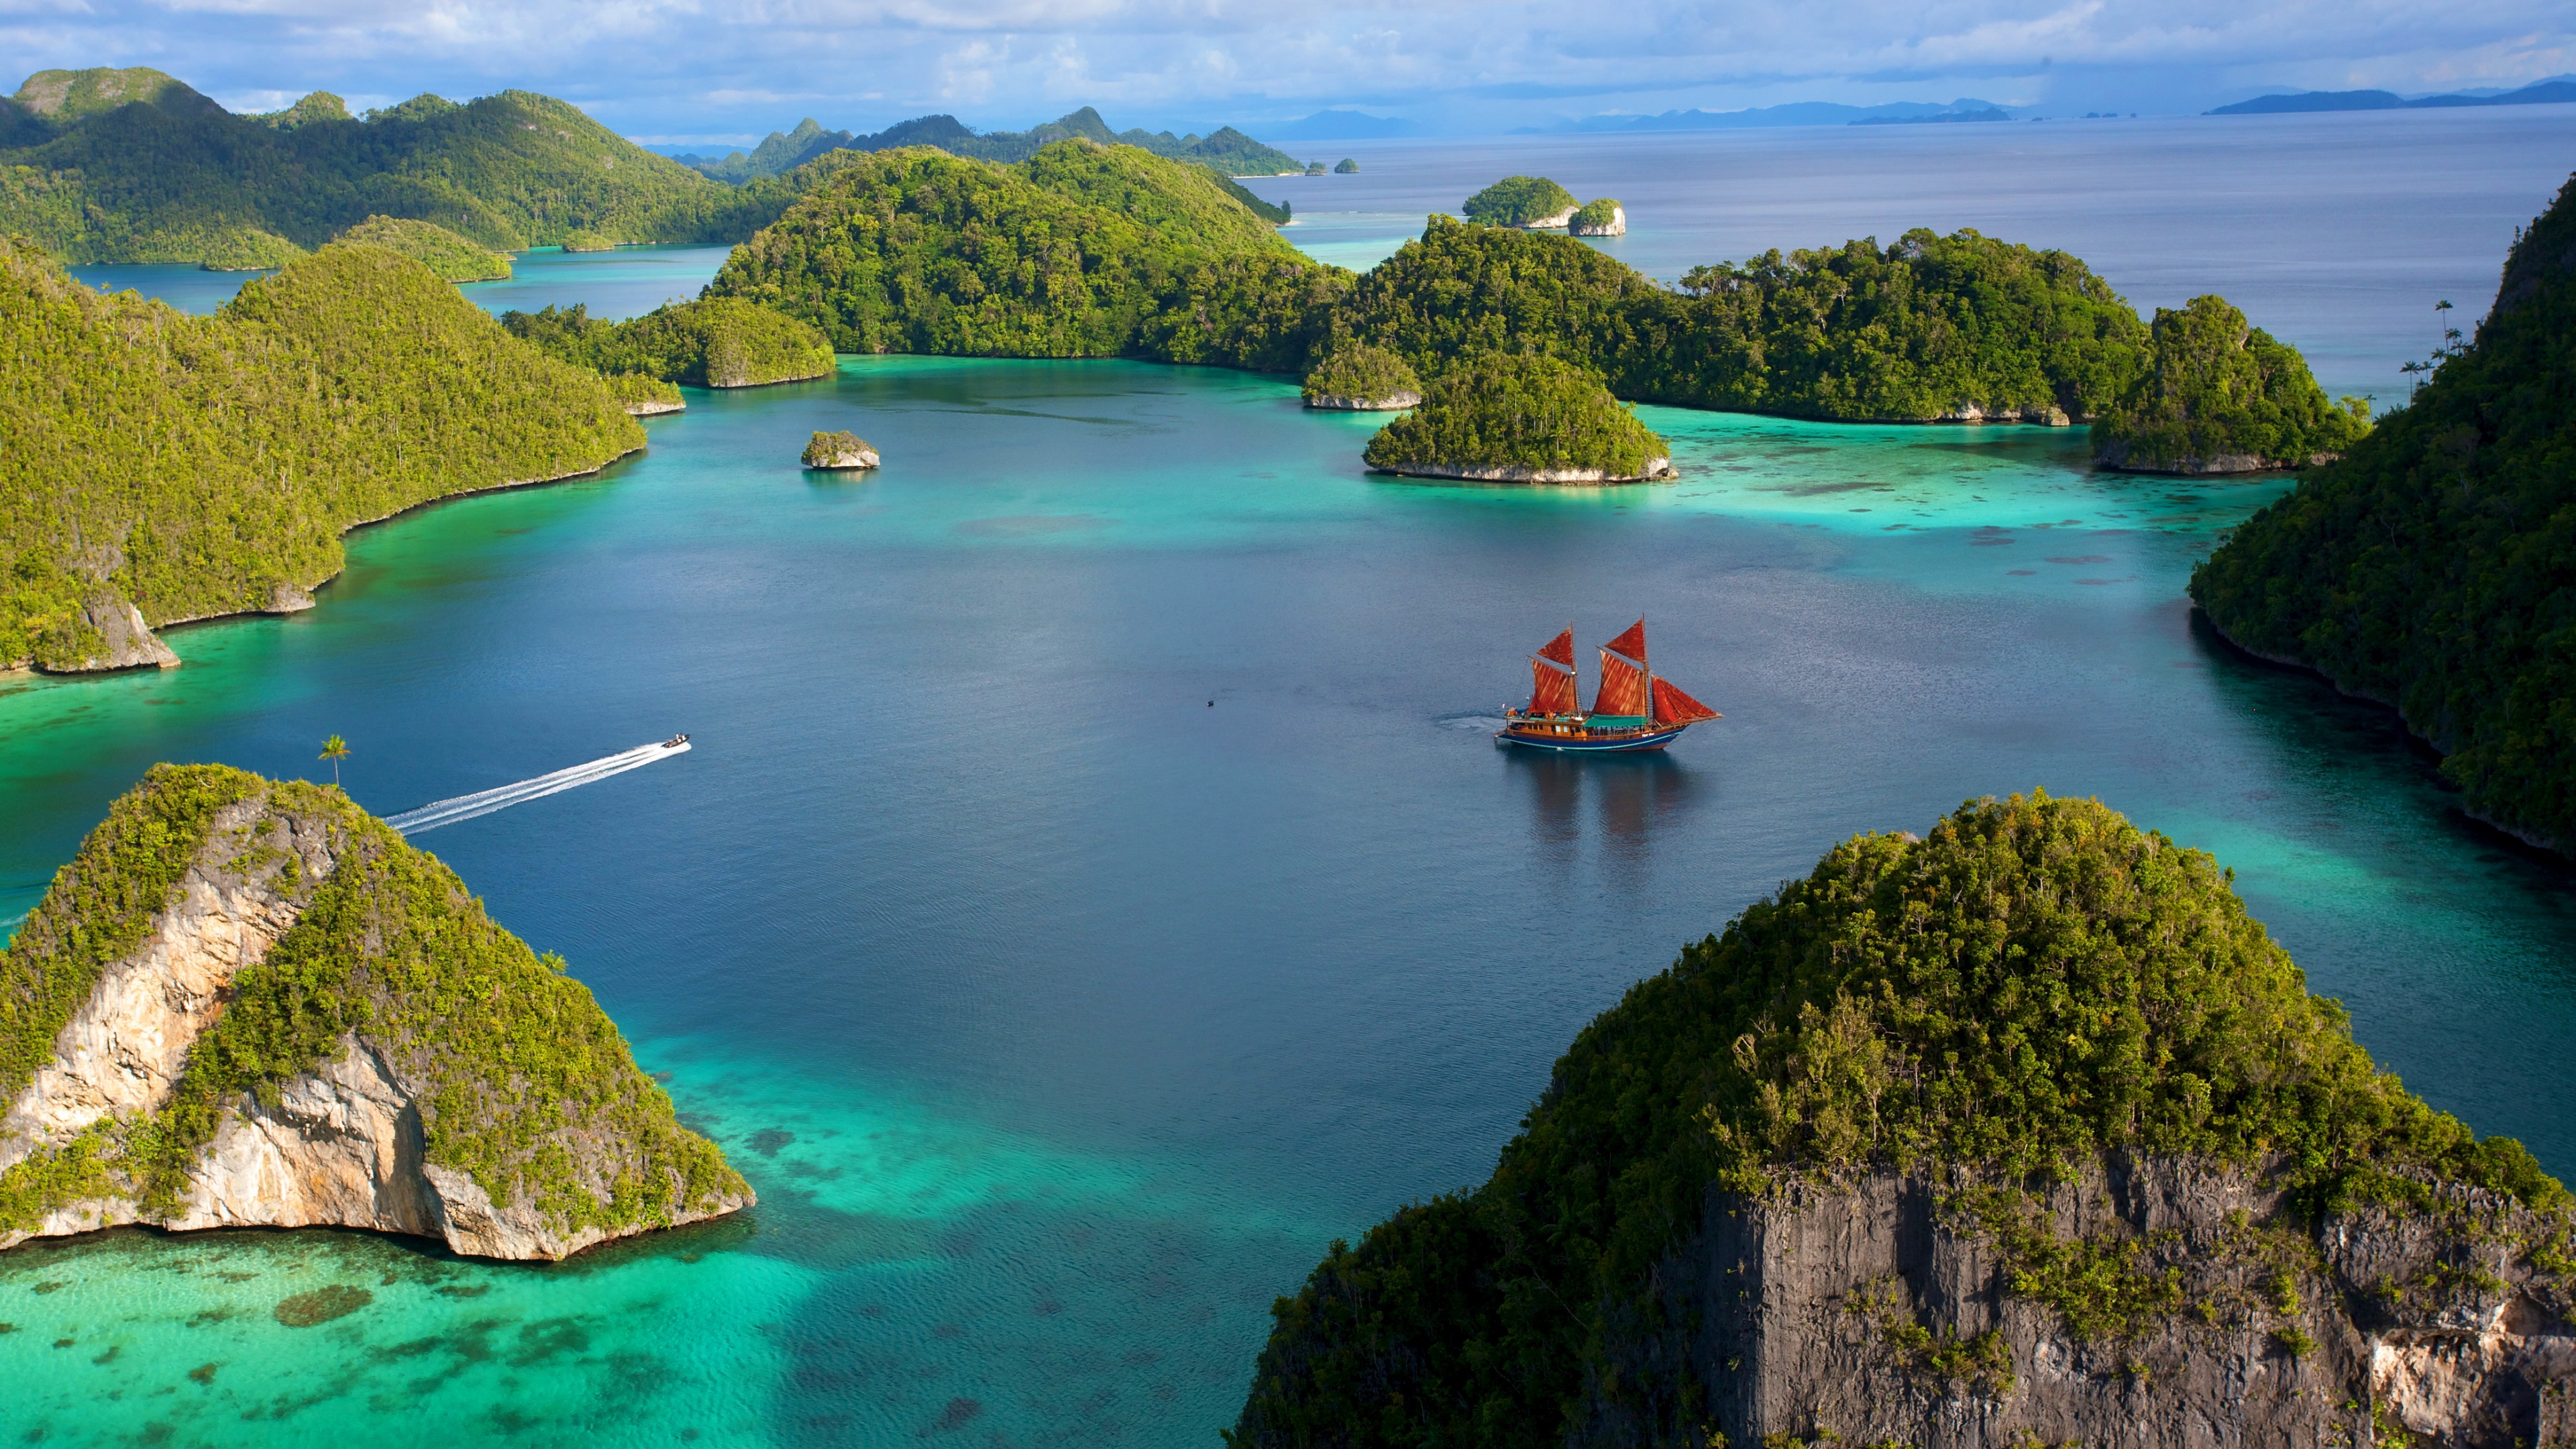 Скачать обои бесплатно Океан, Лодка, Индонезия, Фотографии картинка на рабочий стол ПК